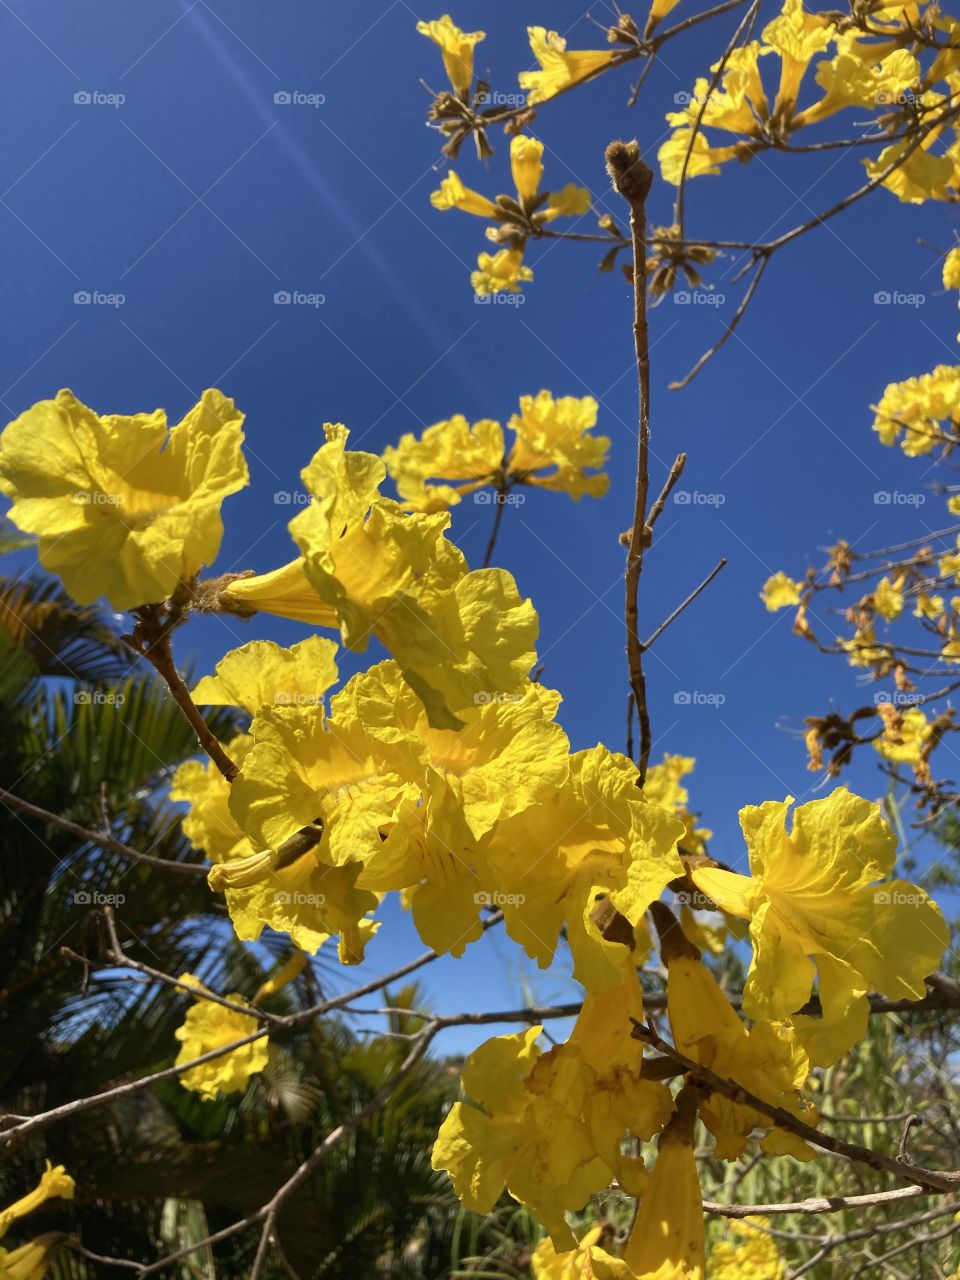 Que combinação perfeita é essa do amarelo da flor do ipê com o céu azul infinito?

Tem como não se inspirar?

Uma 6a feira tão bela precisa ser bem vivida. Vivamos-a em abundância (e com responsabilidade).